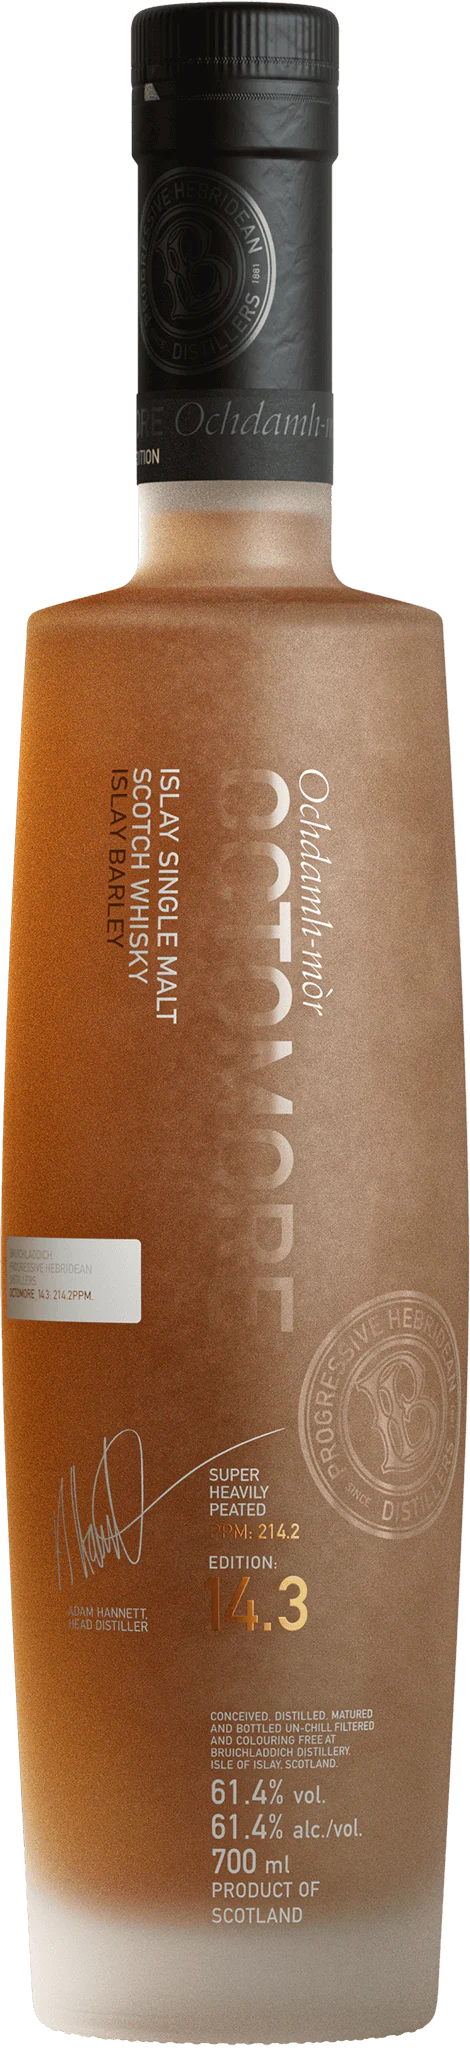 Bruichladdich Octomore Edition 14.3 Islay Single Malt Scotch Whisky 750ml